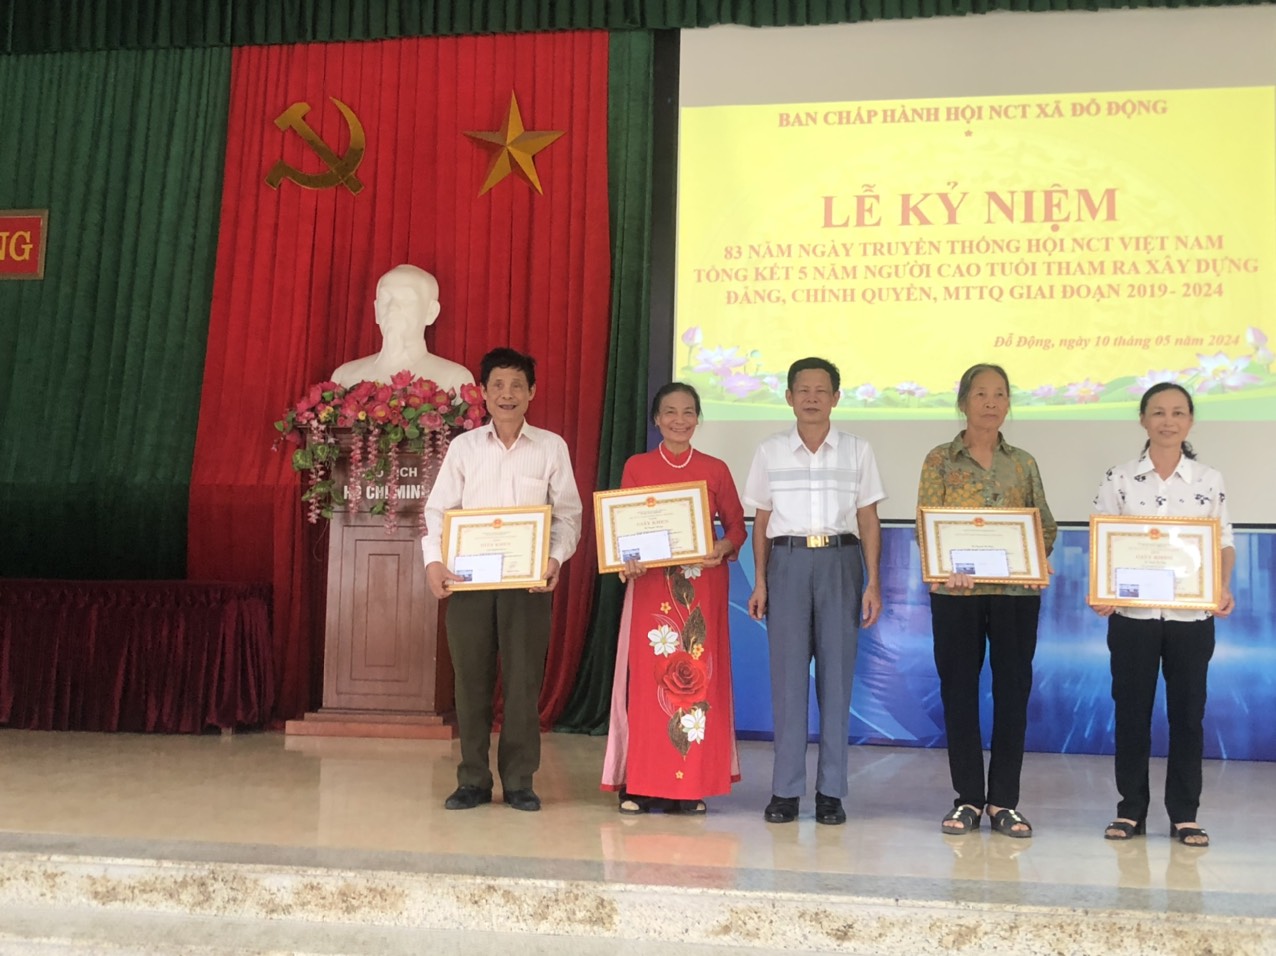 Hội Người cao tuổi xã Đỗ Động tổ chức Lễ kỷ niệm 83 năm ngày truyền thống Hội NCT Việt Nam; tổng kết 5 năm NCT tham gia xây dựng Đảng, Chính quyền, MTTQ giai đoạn 2019- 2024